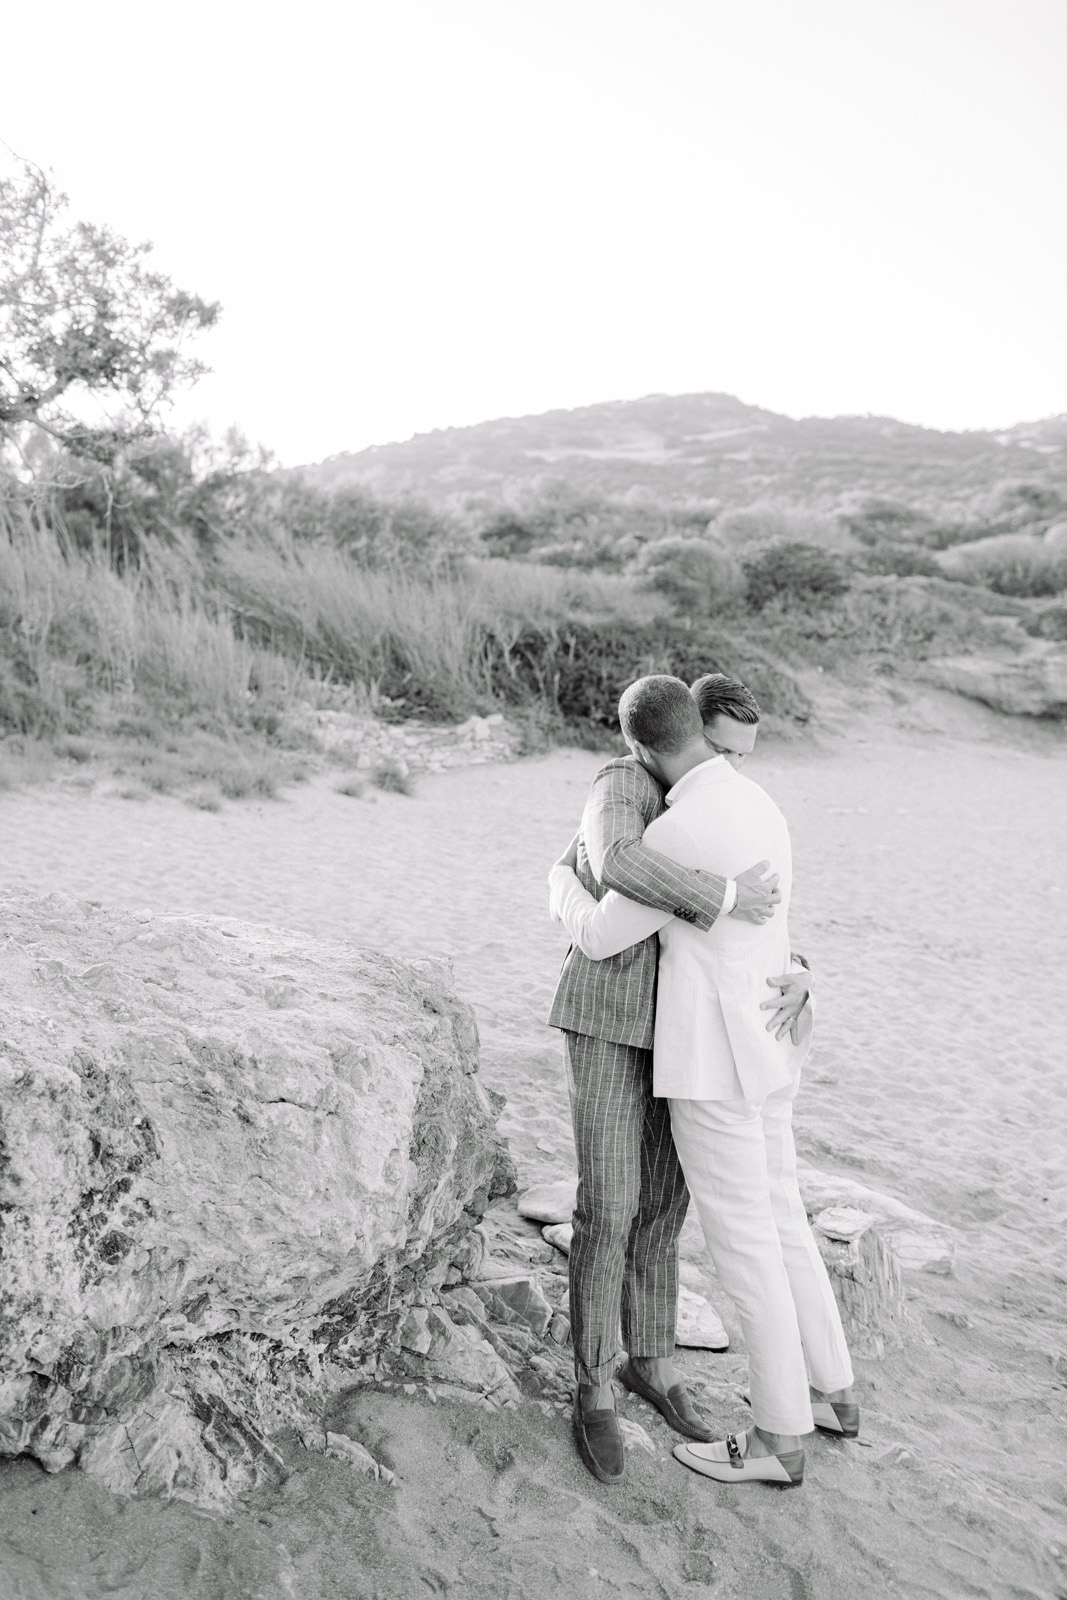 Antiparos wedding photographer captures a same sex wedding in a private villa